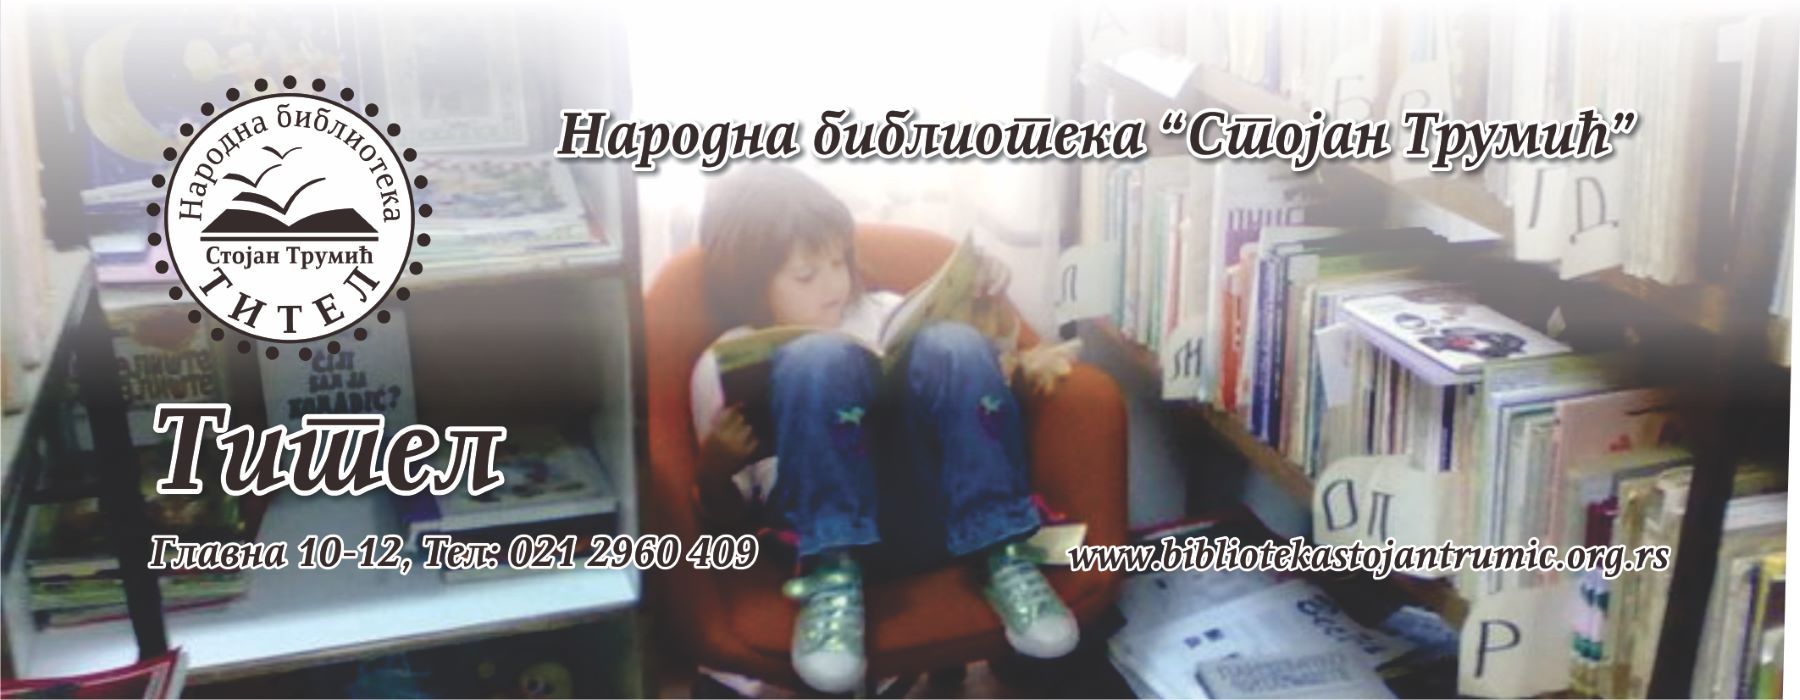 Виртуелна библиотека Србије